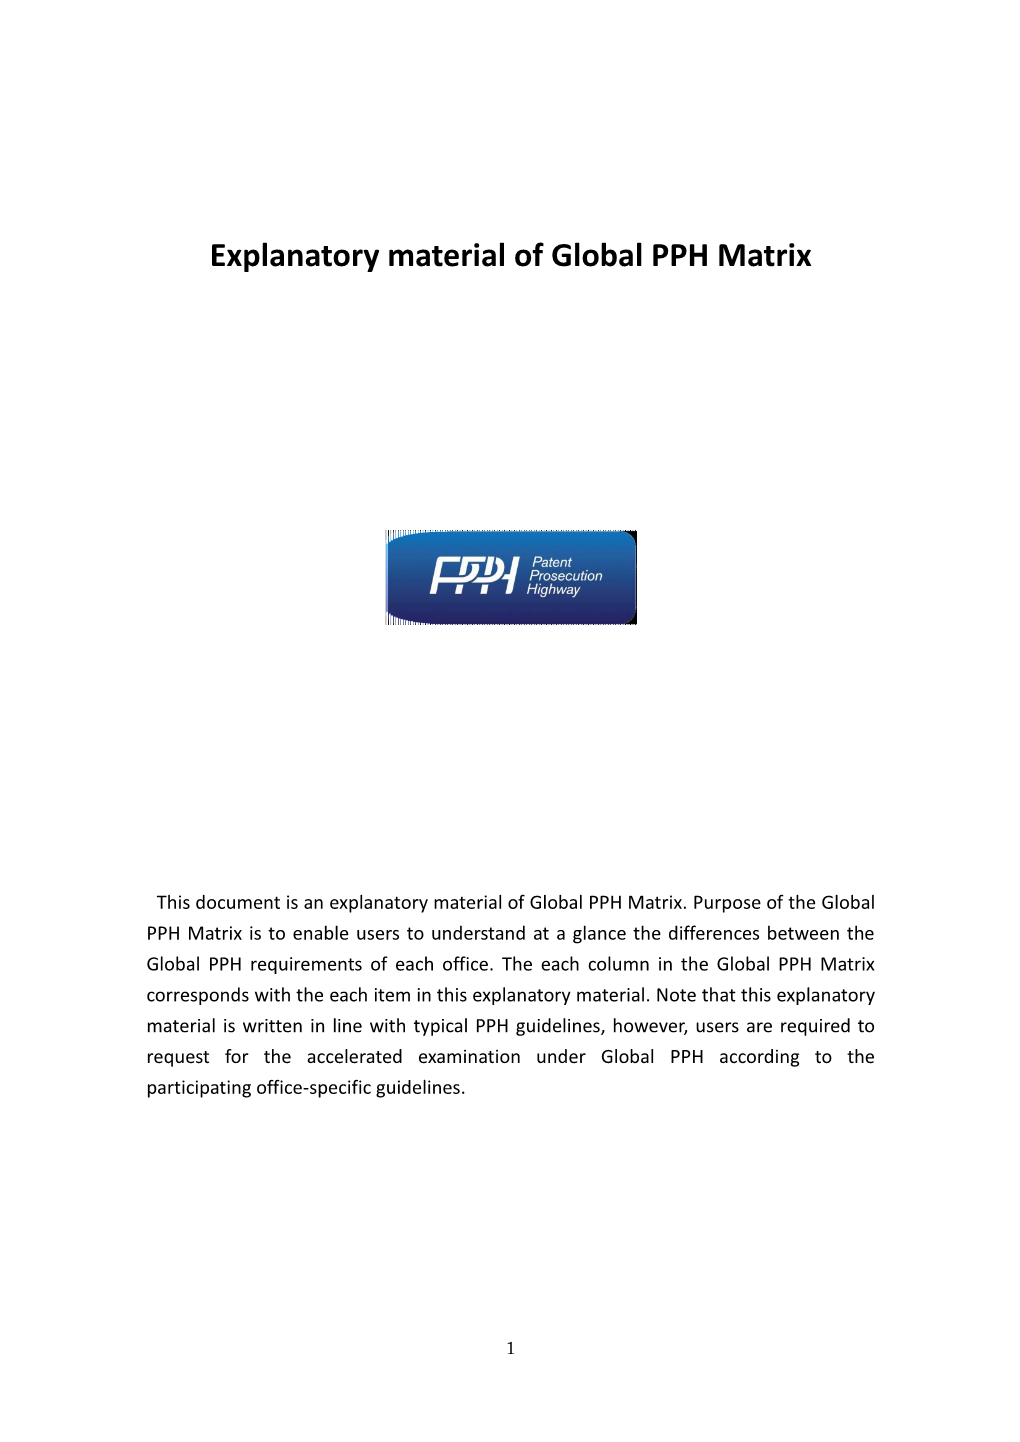 Explanatory Material of Global PPH Matrix